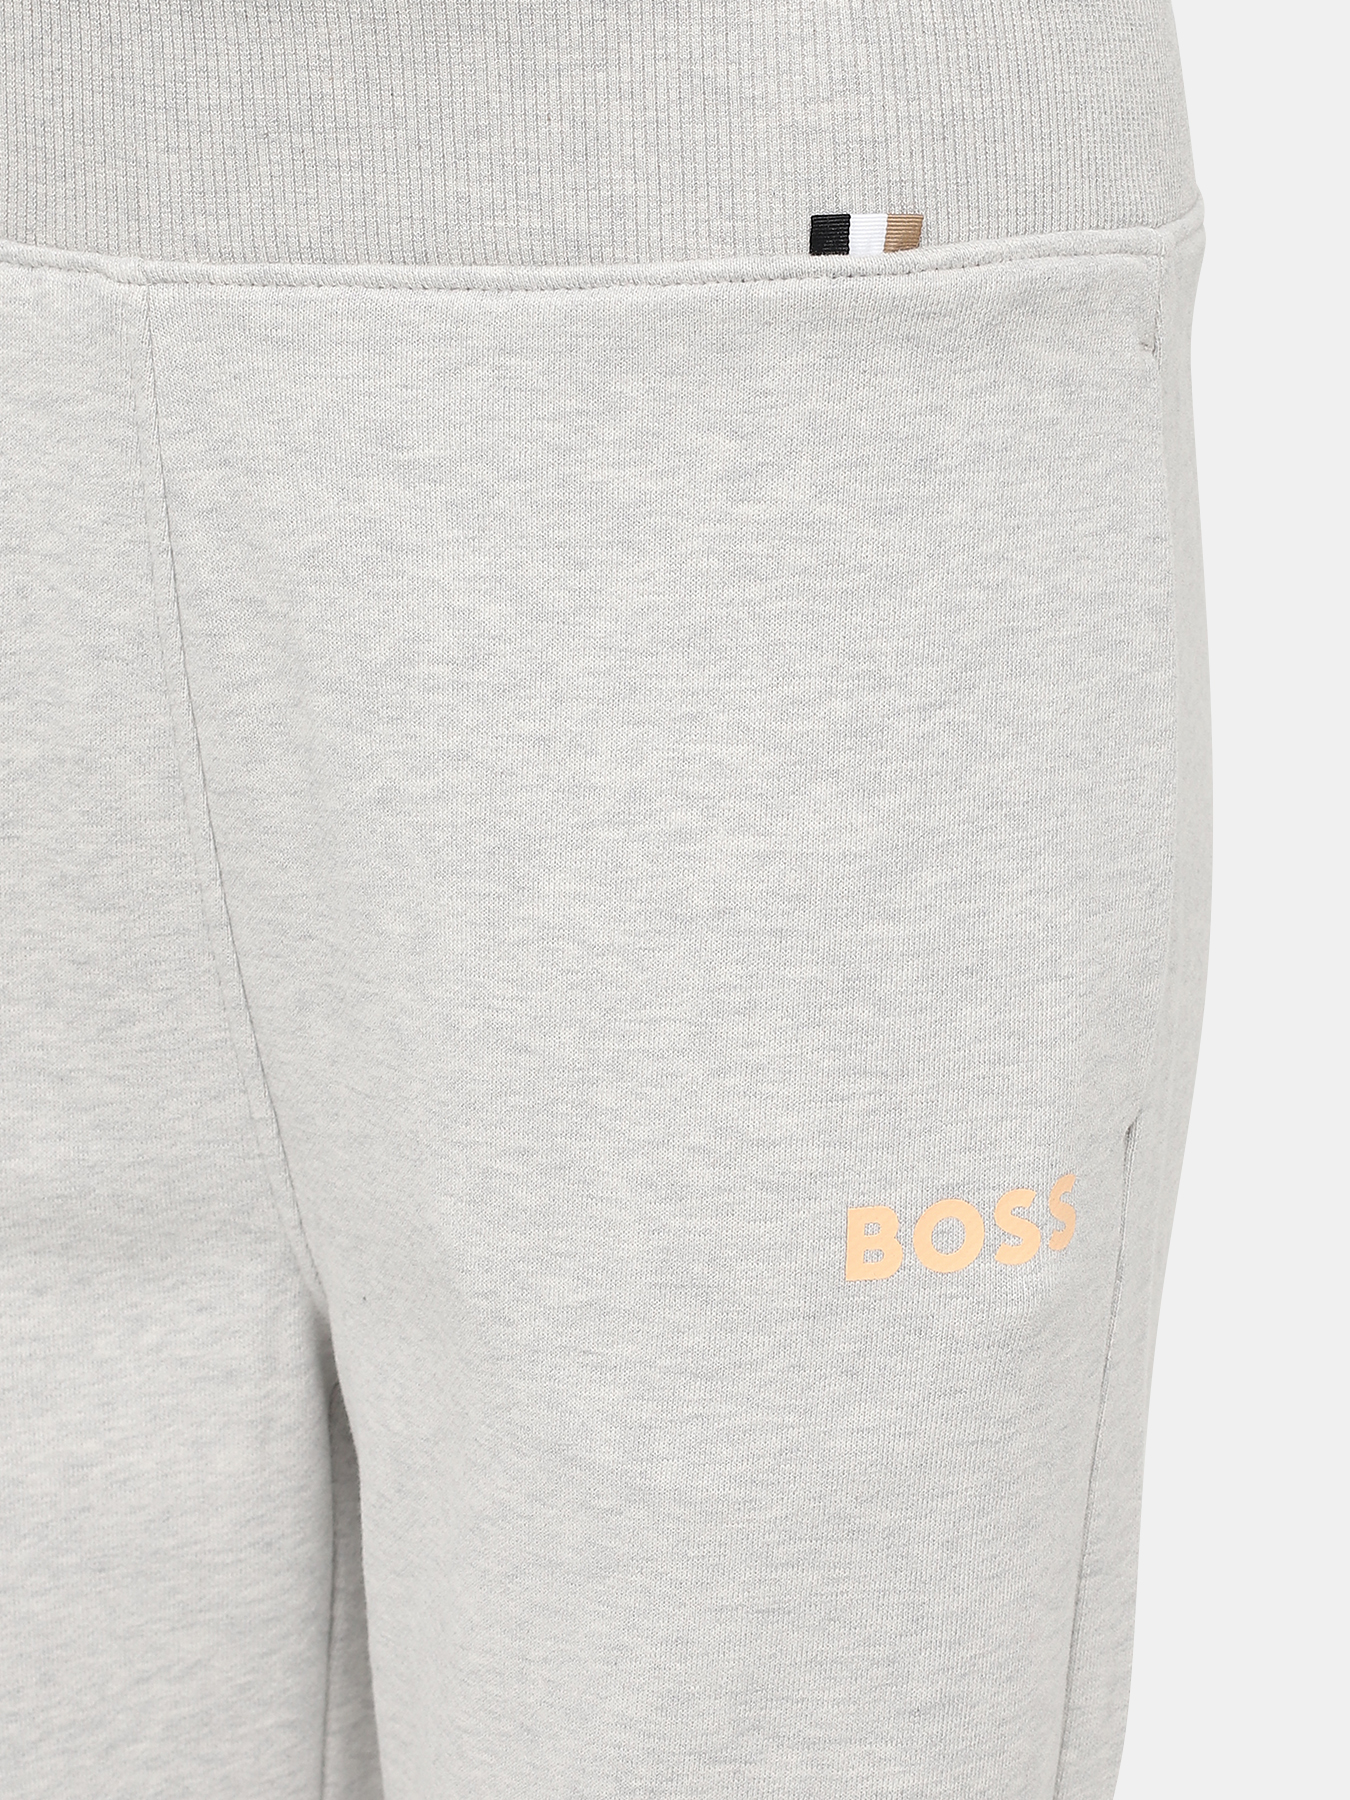 Спортивные брюки Ejoy BOSS 424173-041, цвет серый, размер 40-42 - фото 2